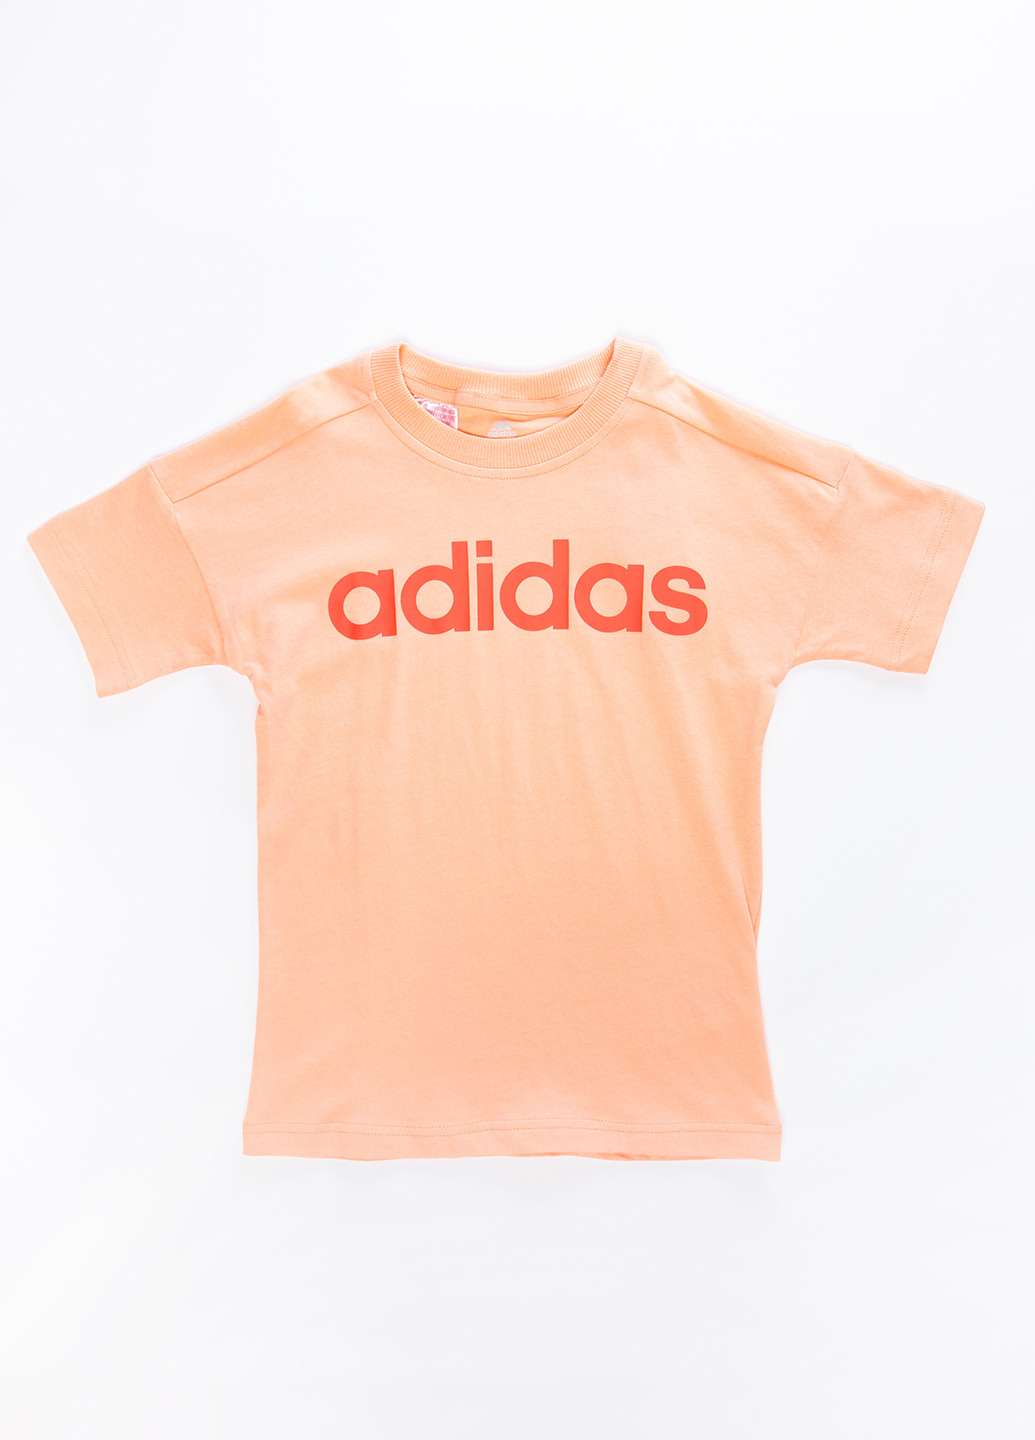 Коралловая демисезонная футболка adidas